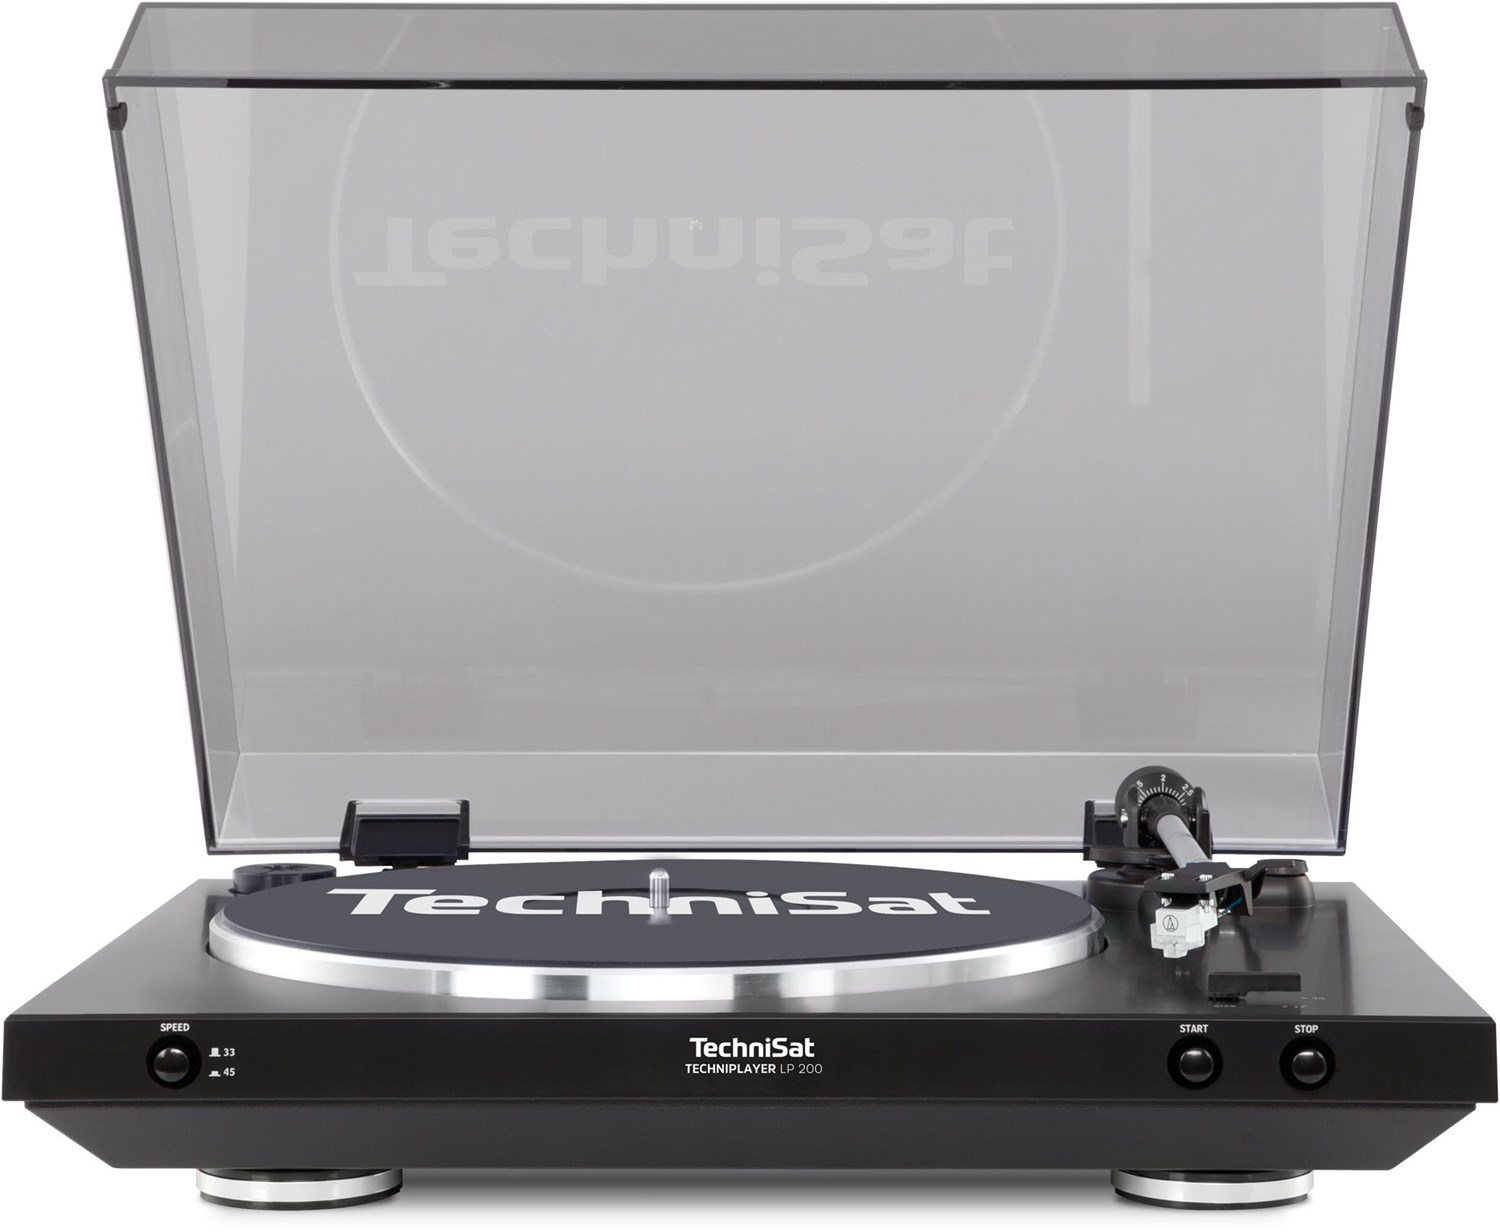 Technisat TechniPlayer LP 200 Plattenspieler  - Onlineshop EURONICS